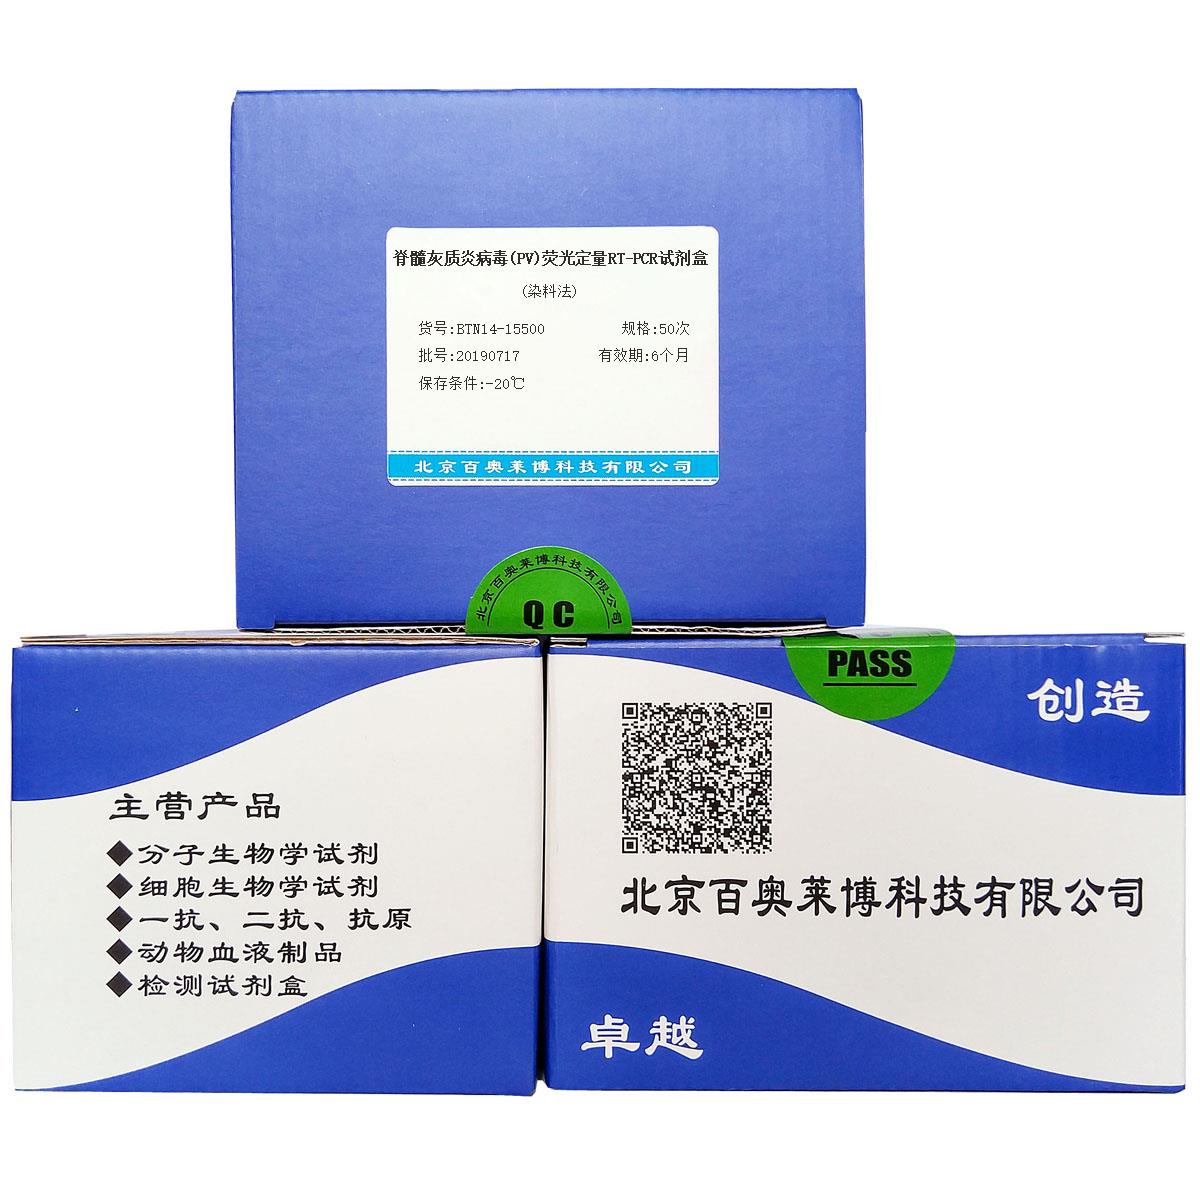 脊髓灰质炎病毒(PV)荧光定量RT-PCR试剂盒(染料法)